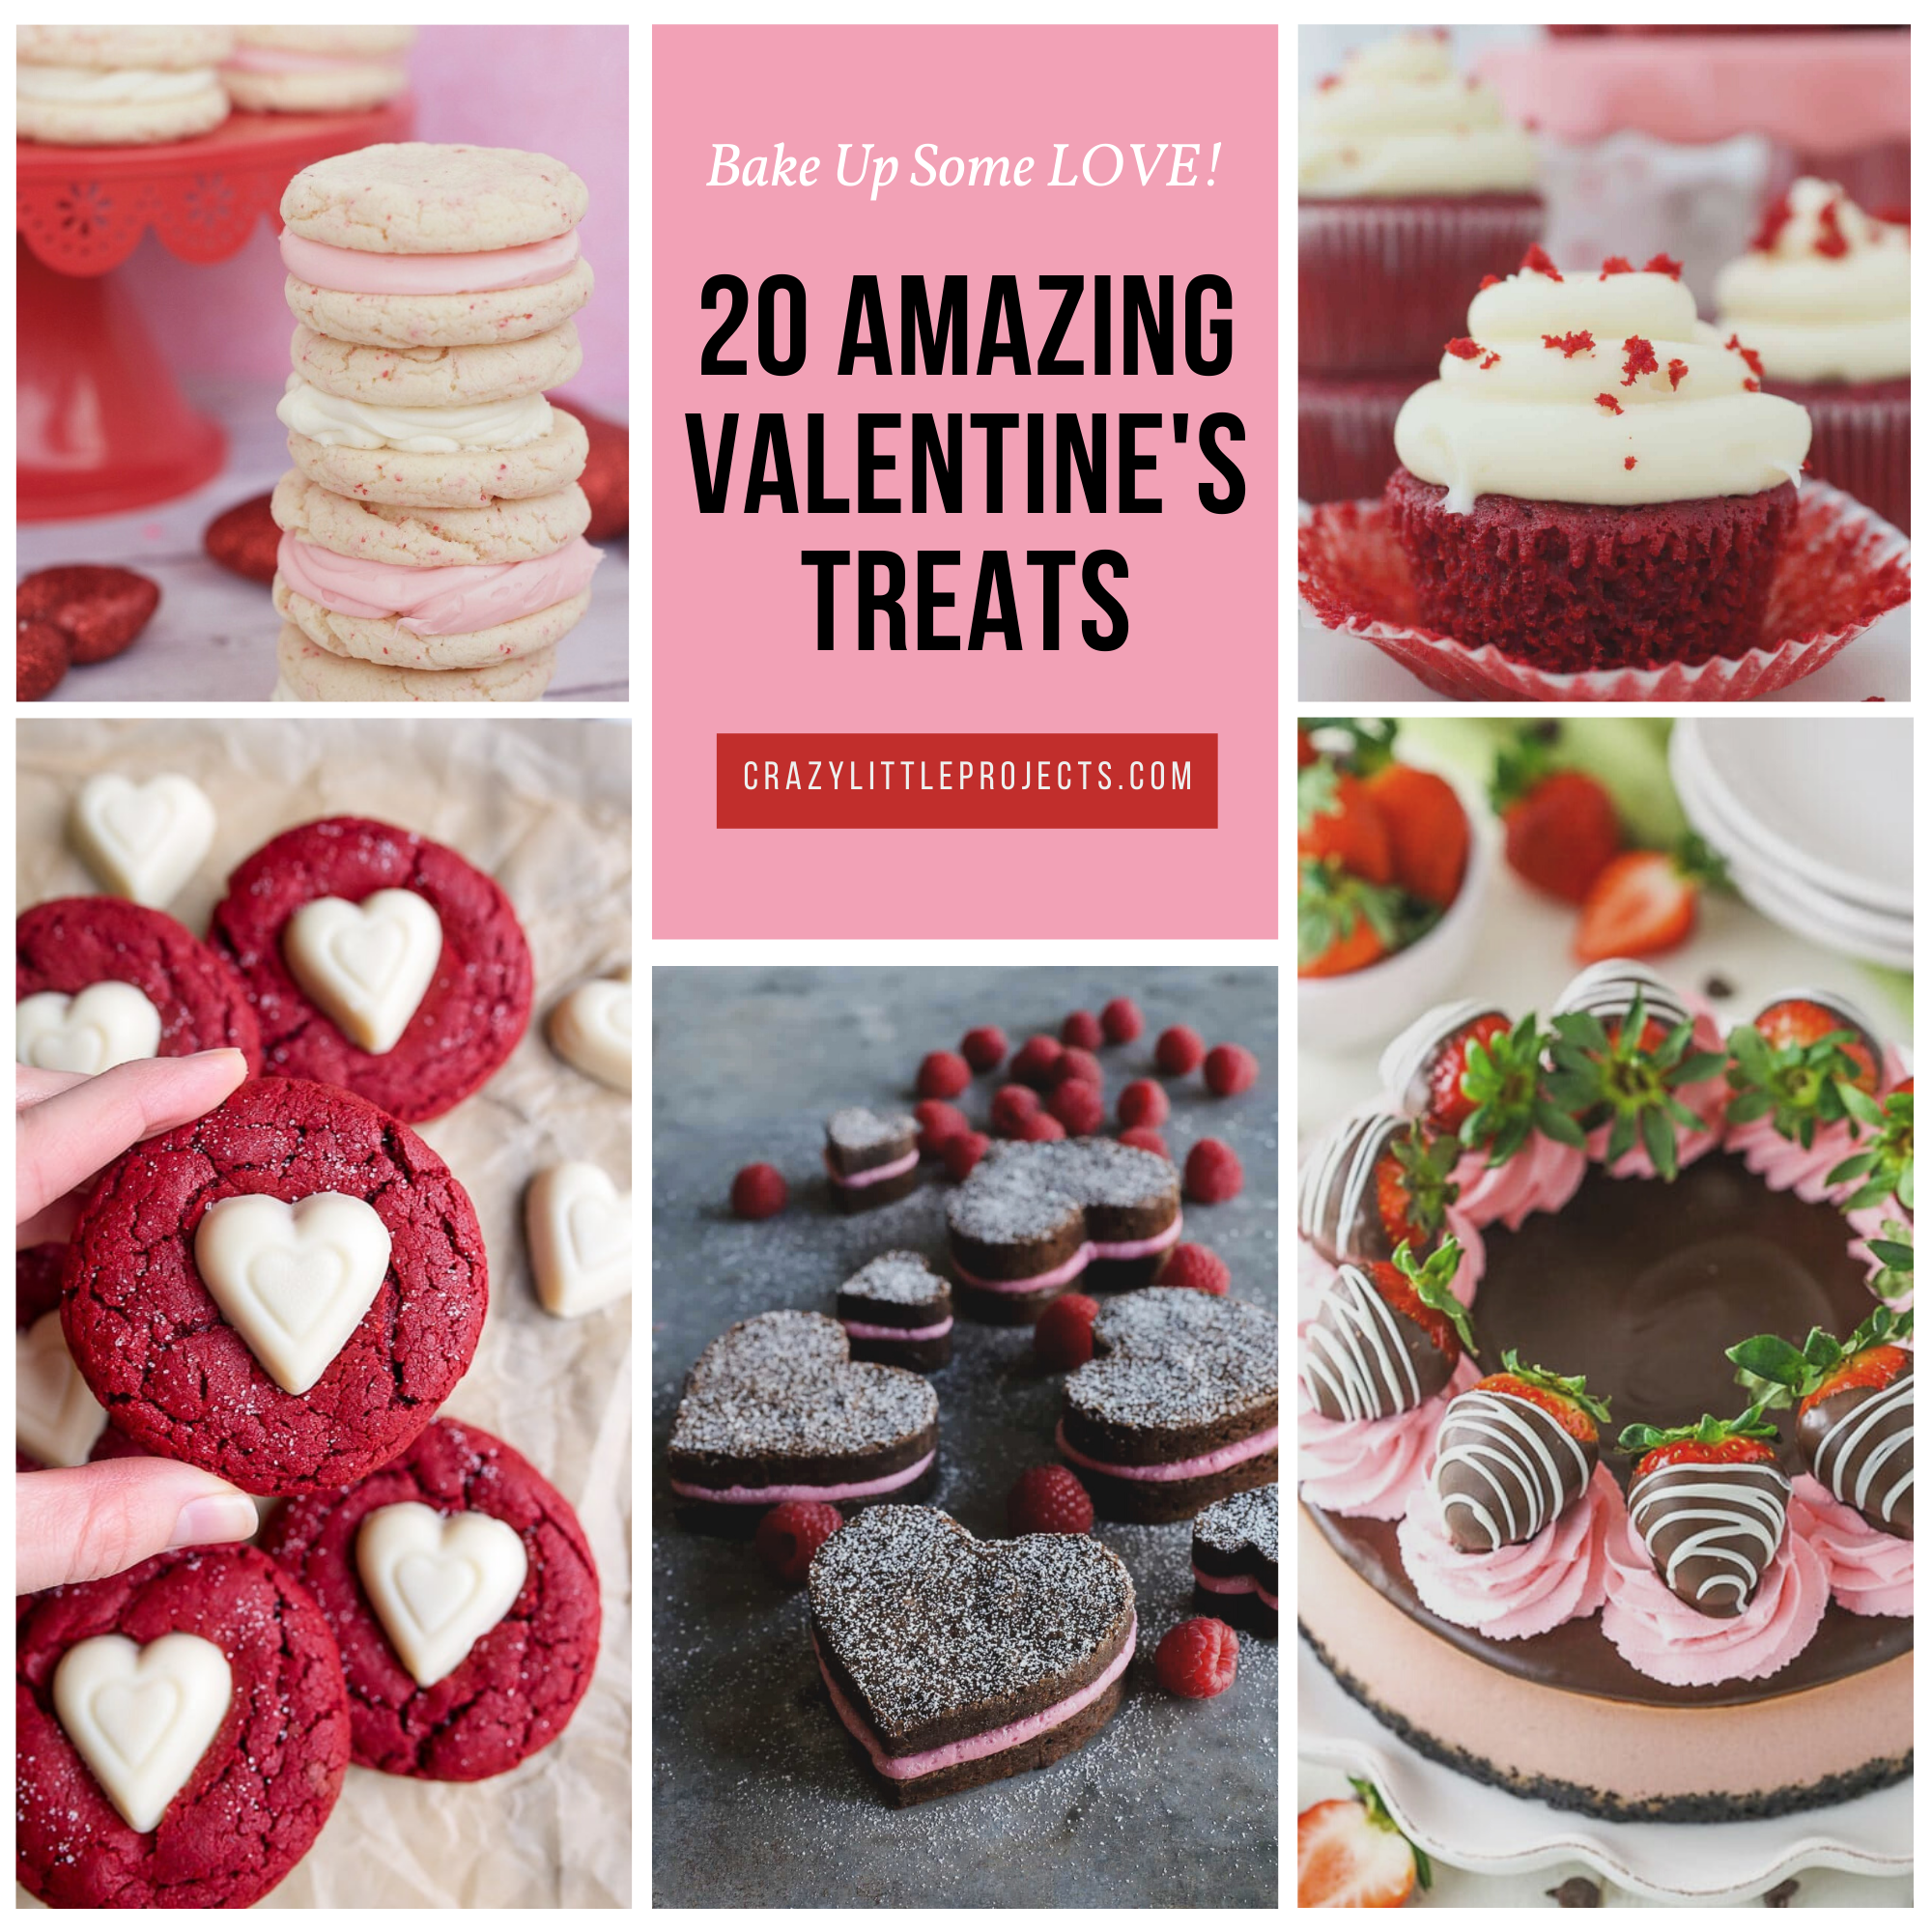 20 Amazing Valentine’s Treats (1)